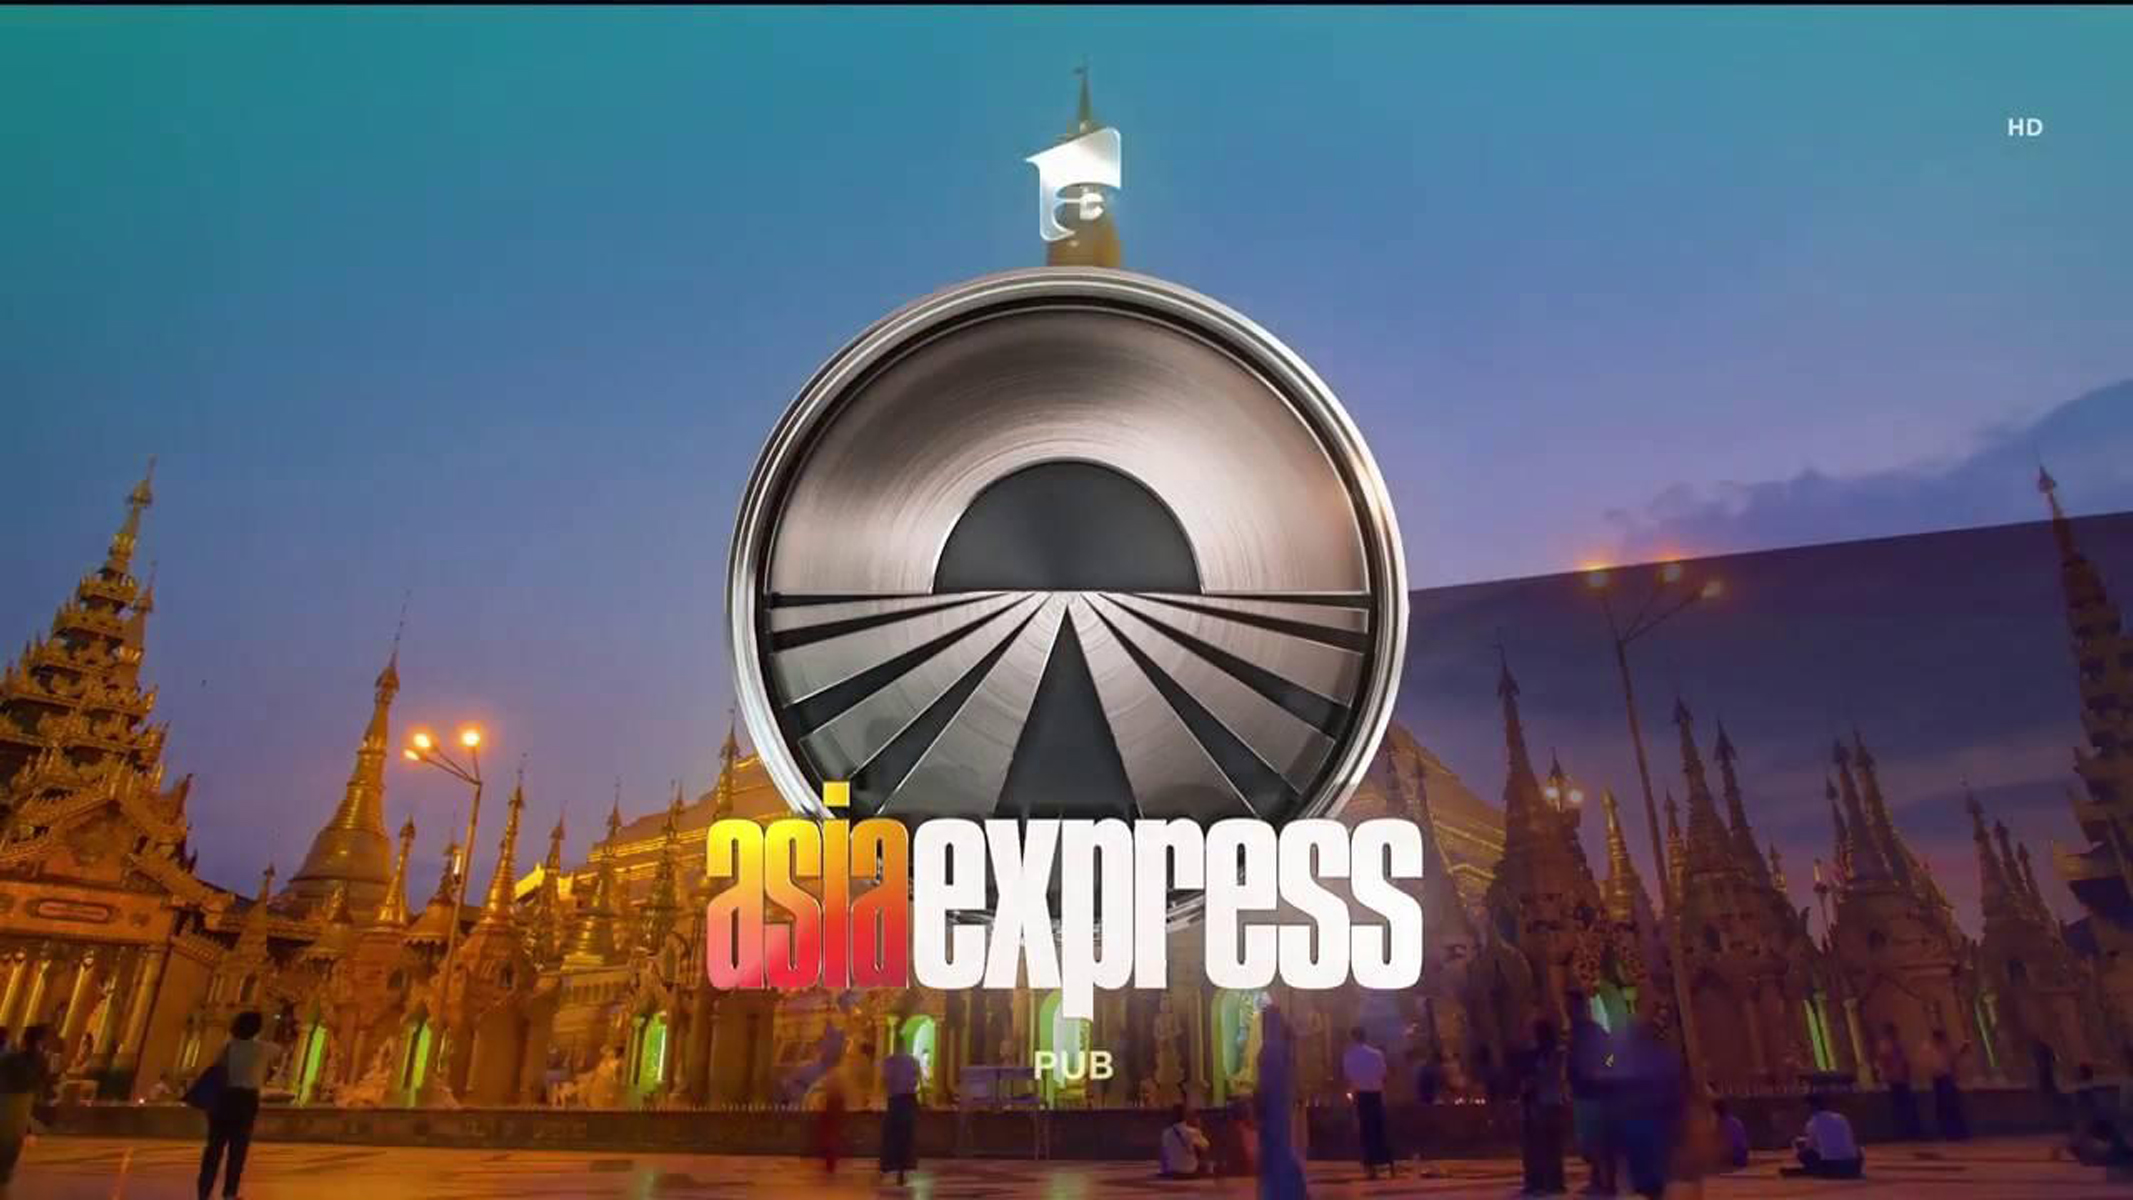  Asia Express